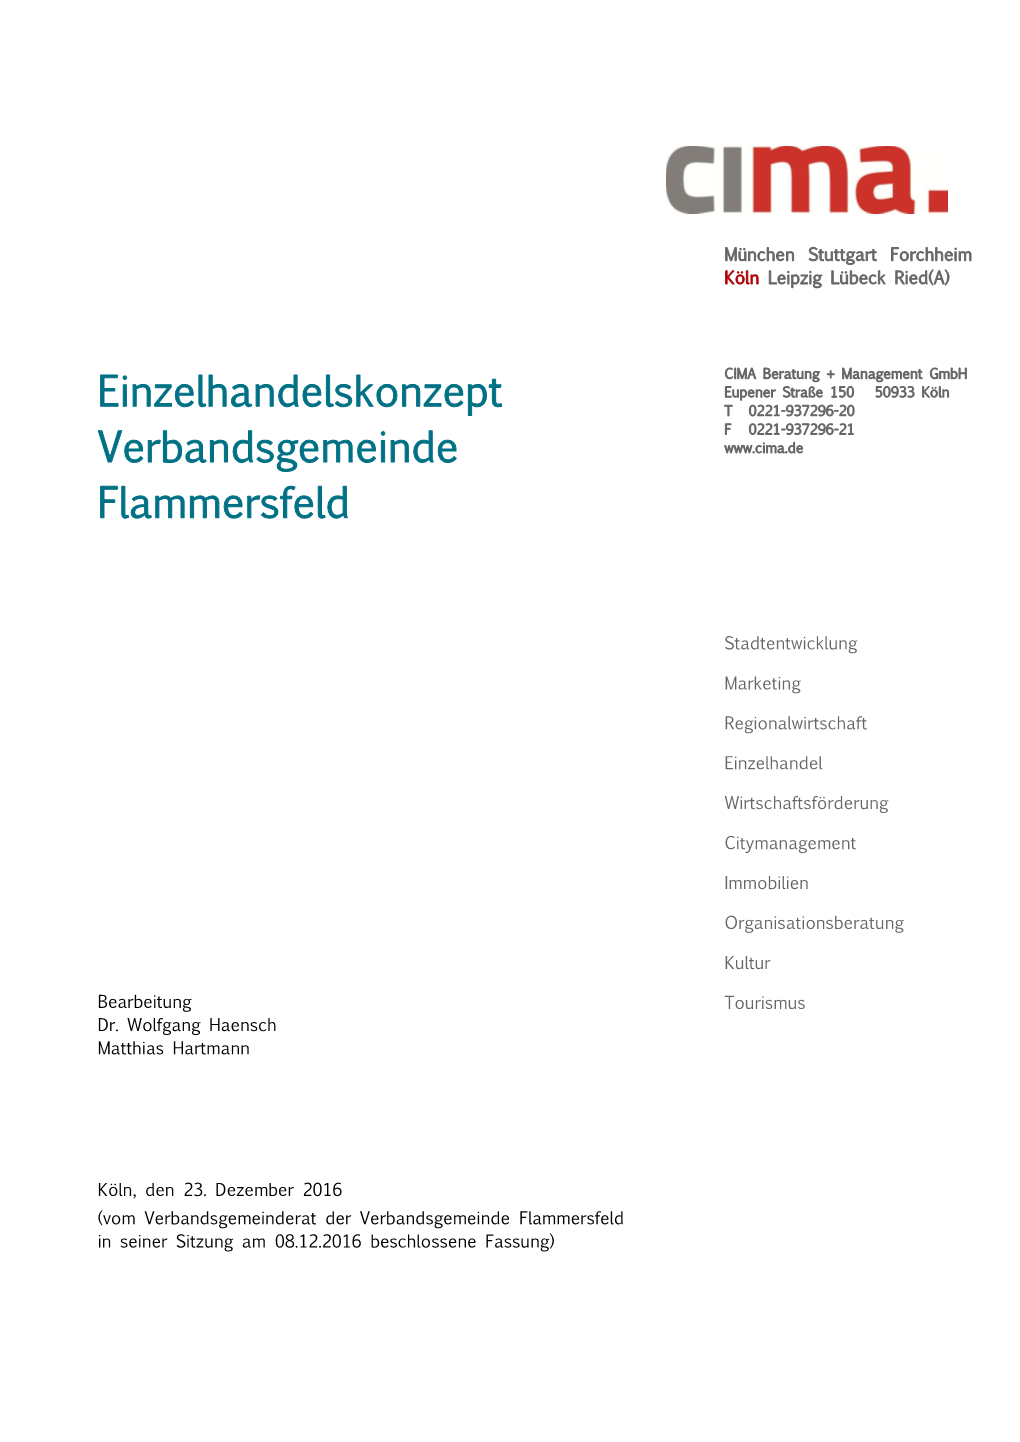 Einzelhandelskonzept T 0221-937296-20 F 0221-937296-21 Verbandsgemeinde Flammersfeld